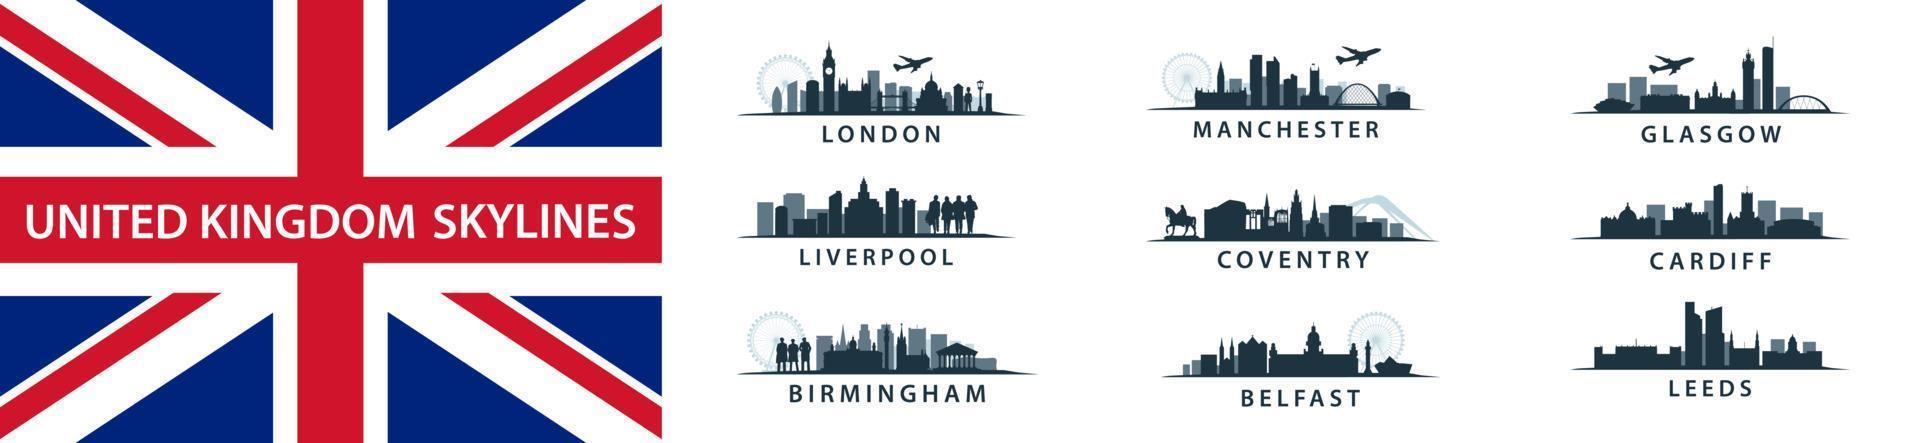 uk steden verzameling, skylines reeks in vector sihouettes, Engels bestemmingen Leuk vinden Londen, leed, Coventry, Birmingham, Liverpool, belfast, cardiff, Glasgow